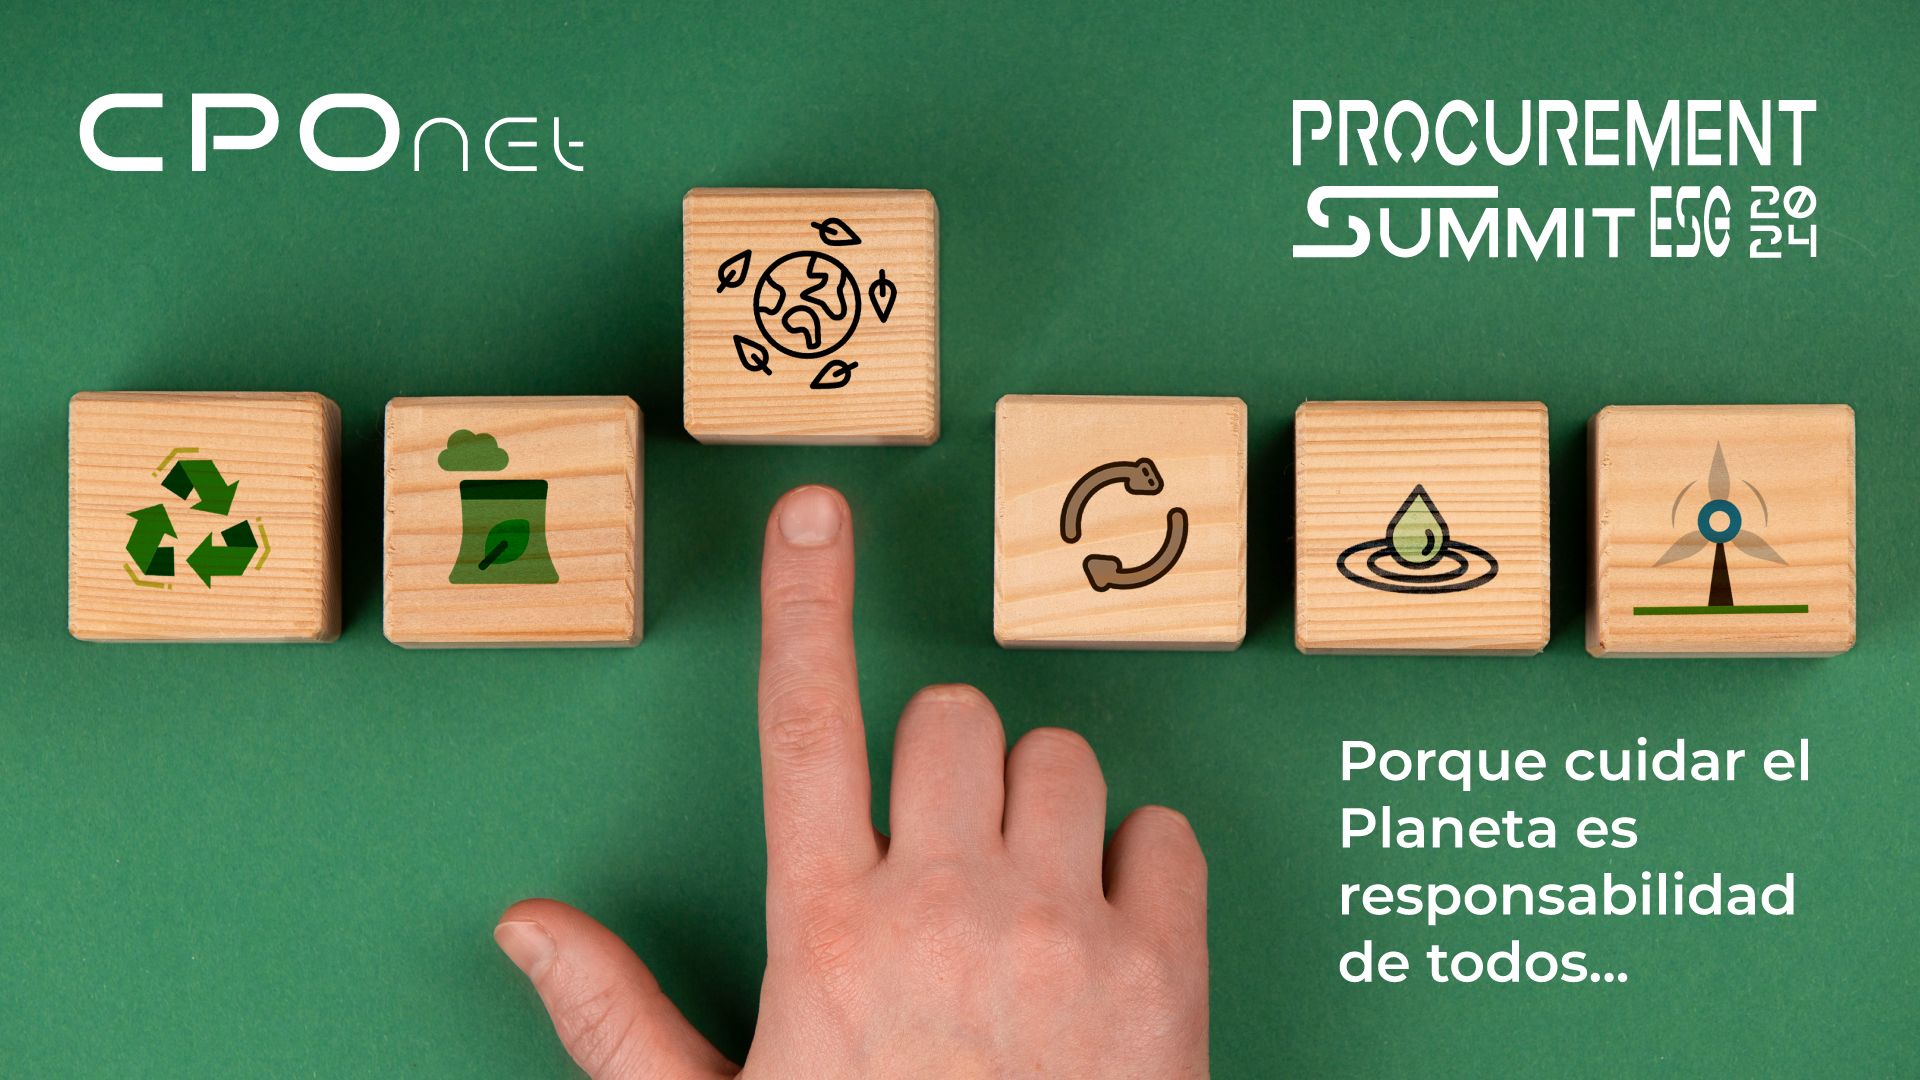 Hacia un futuro sostenible: CPONET celebra el "Procurement Summit ESG 2024" destacando el papel primordial de compras en ESG